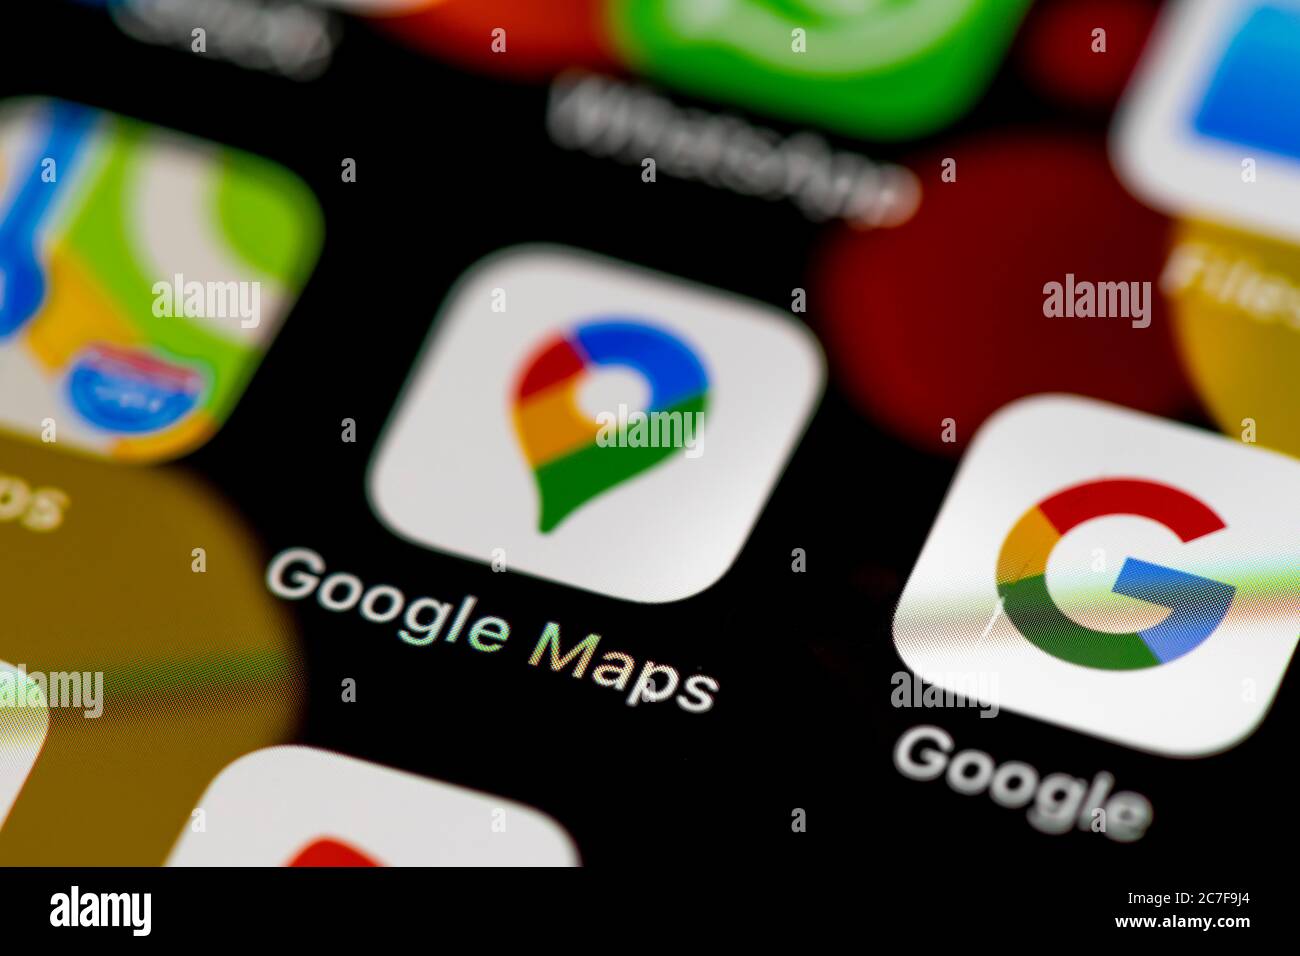 Icône Google Maps, icônes d'application sur un écran de téléphone mobile, iPhone, smartphone, gros plan Banque D'Images